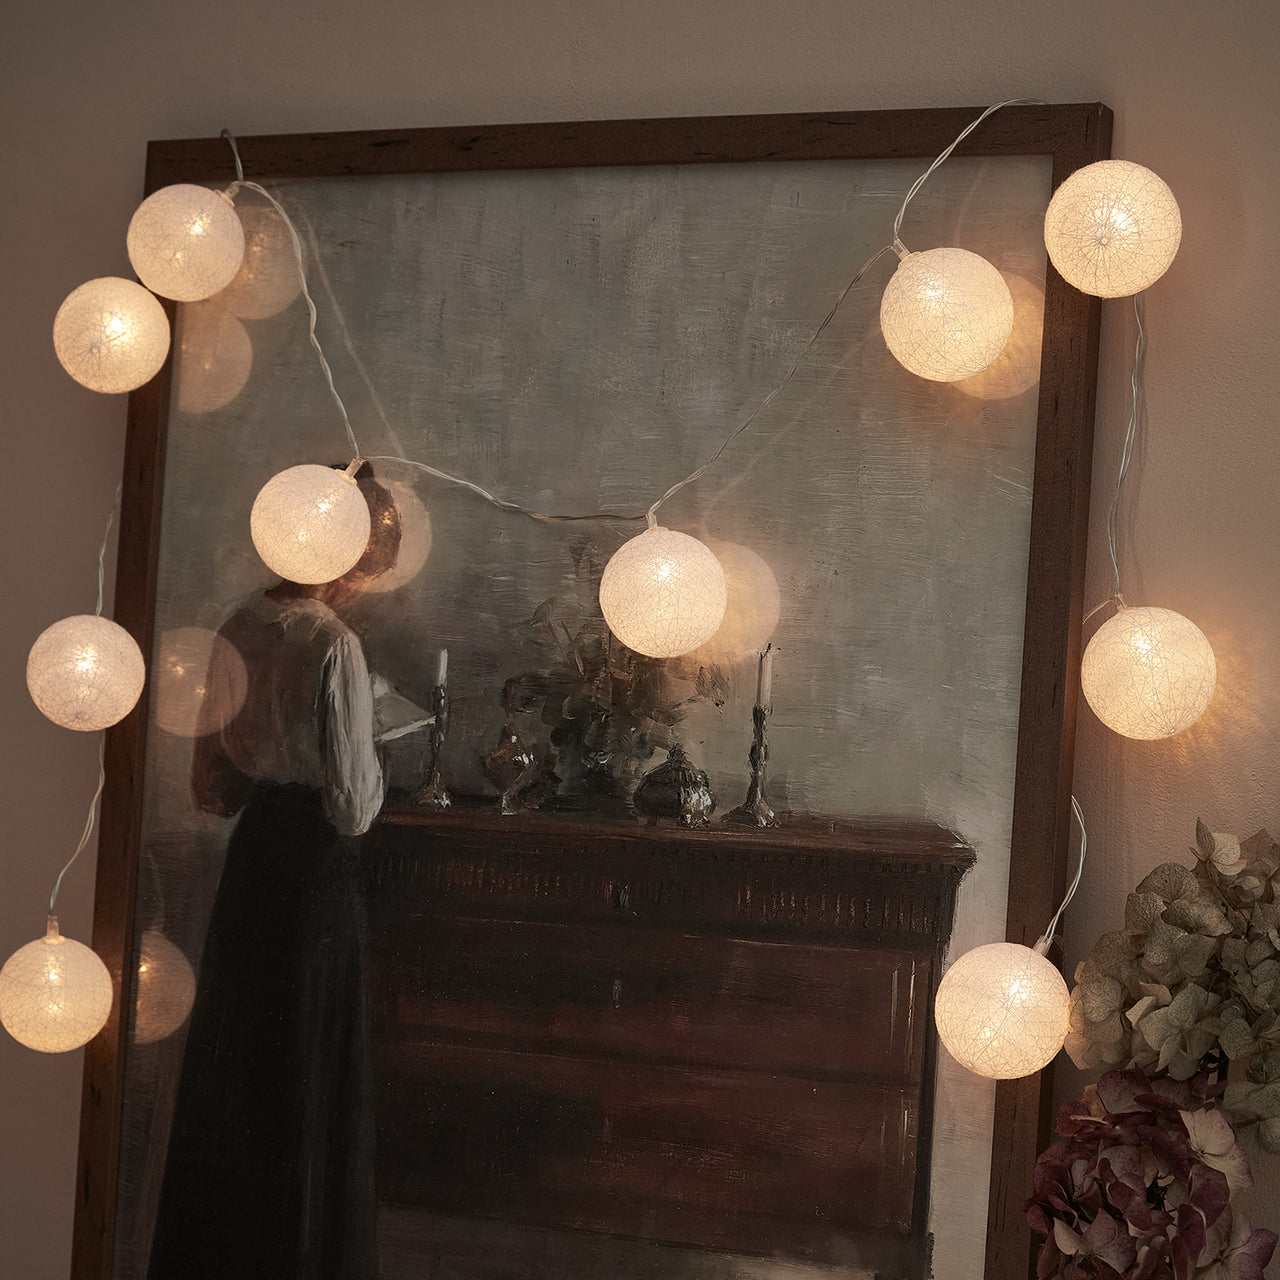 Guirlande Lumineuse Boule en Coton à Piles à LED Blanc Chaud –